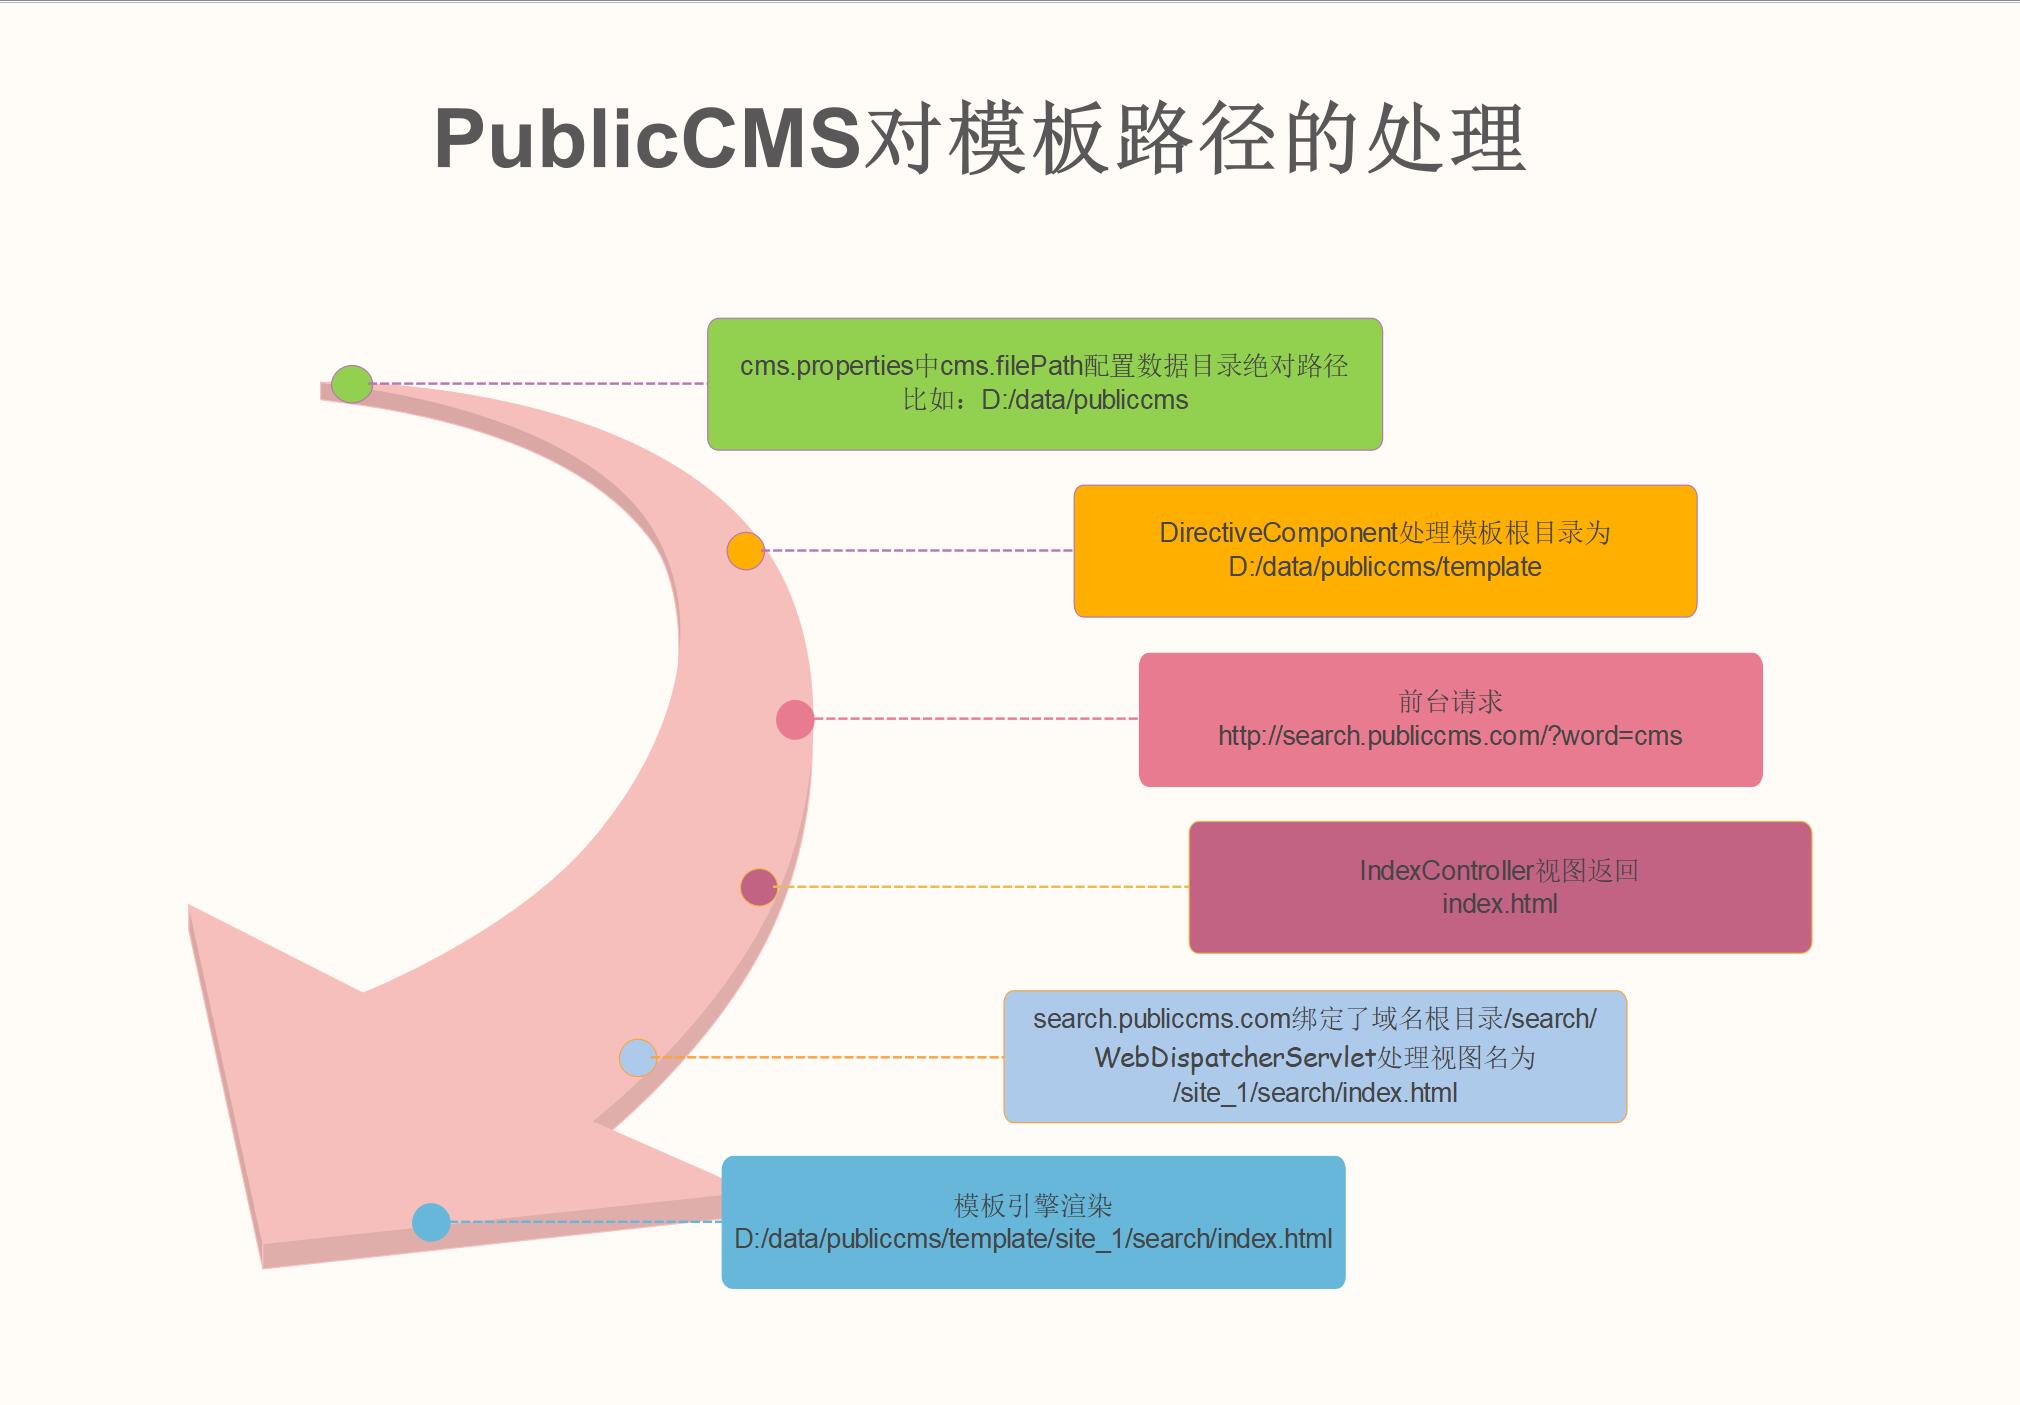 Public CMS启动流程图